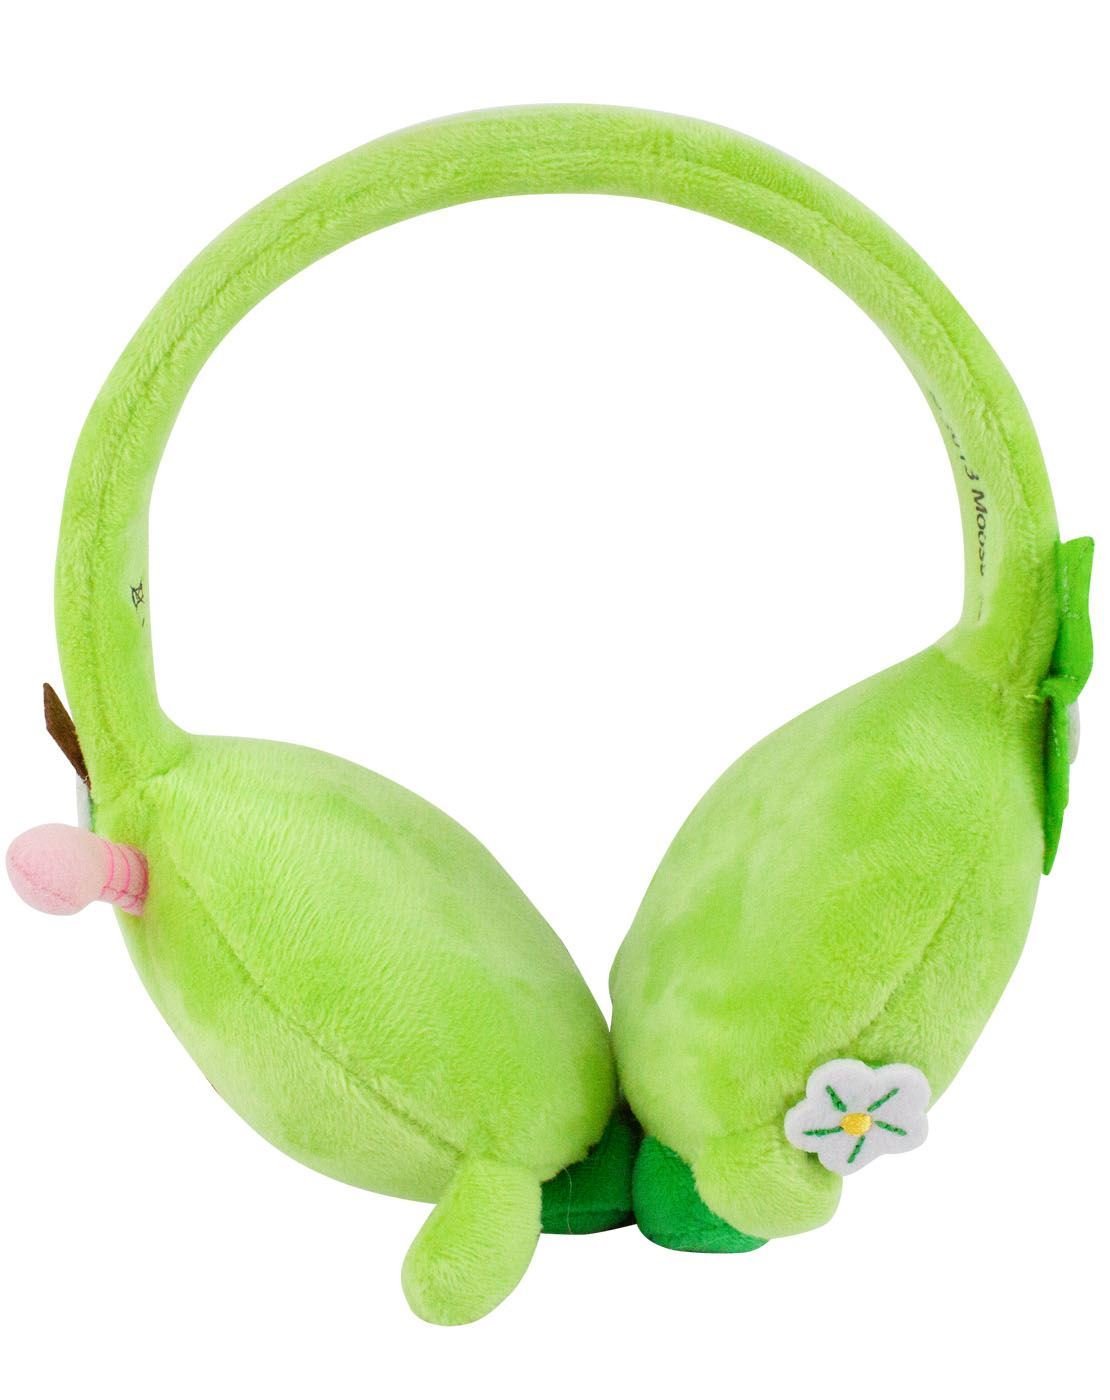 Shopkins D'lish Donut Plush Headphones  - Like New